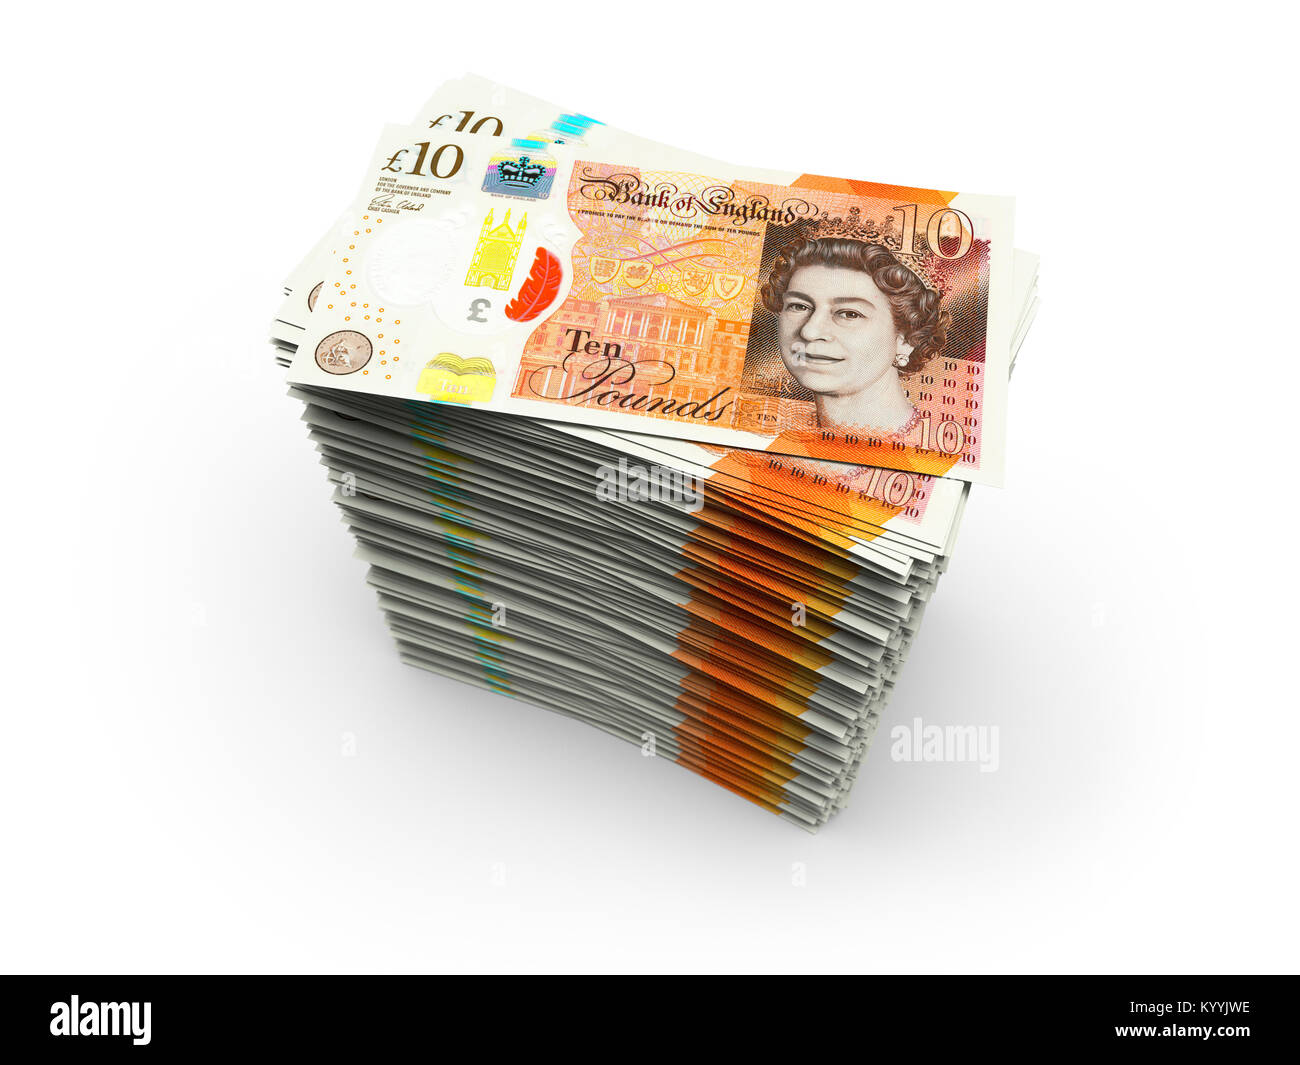 Stapel von zehn 10 Pfund Sterling Notizen auf einem weißen Hintergrund - neues Design 2017 Stockfoto